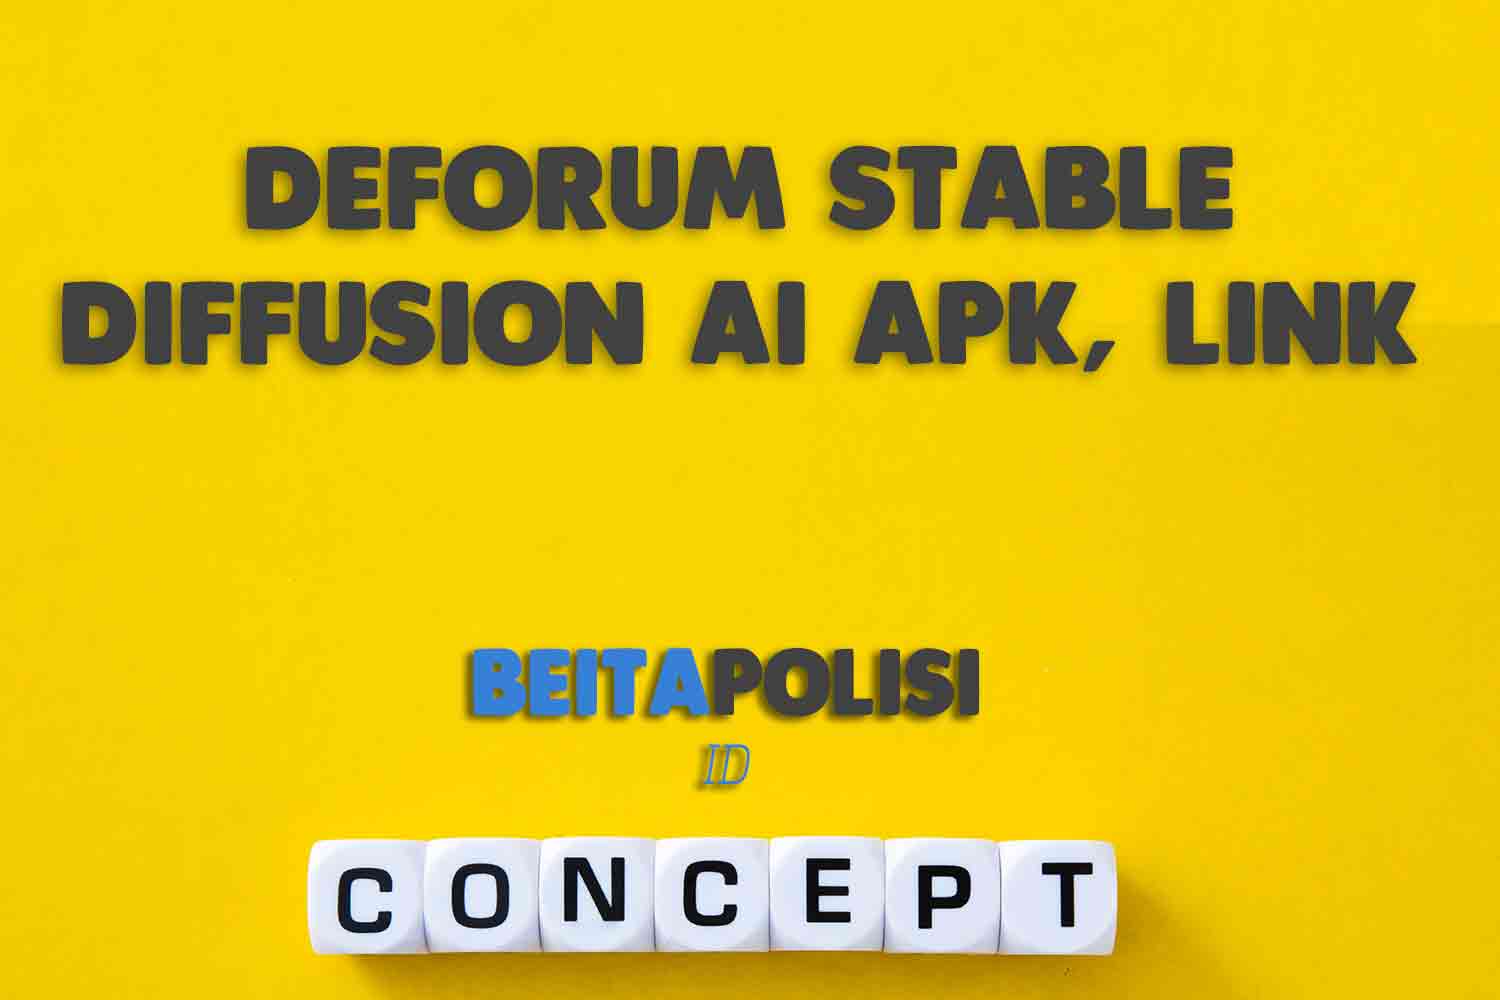 Deforum Stable Diffusion Ai Apk Link Dan Cara Menggunakan